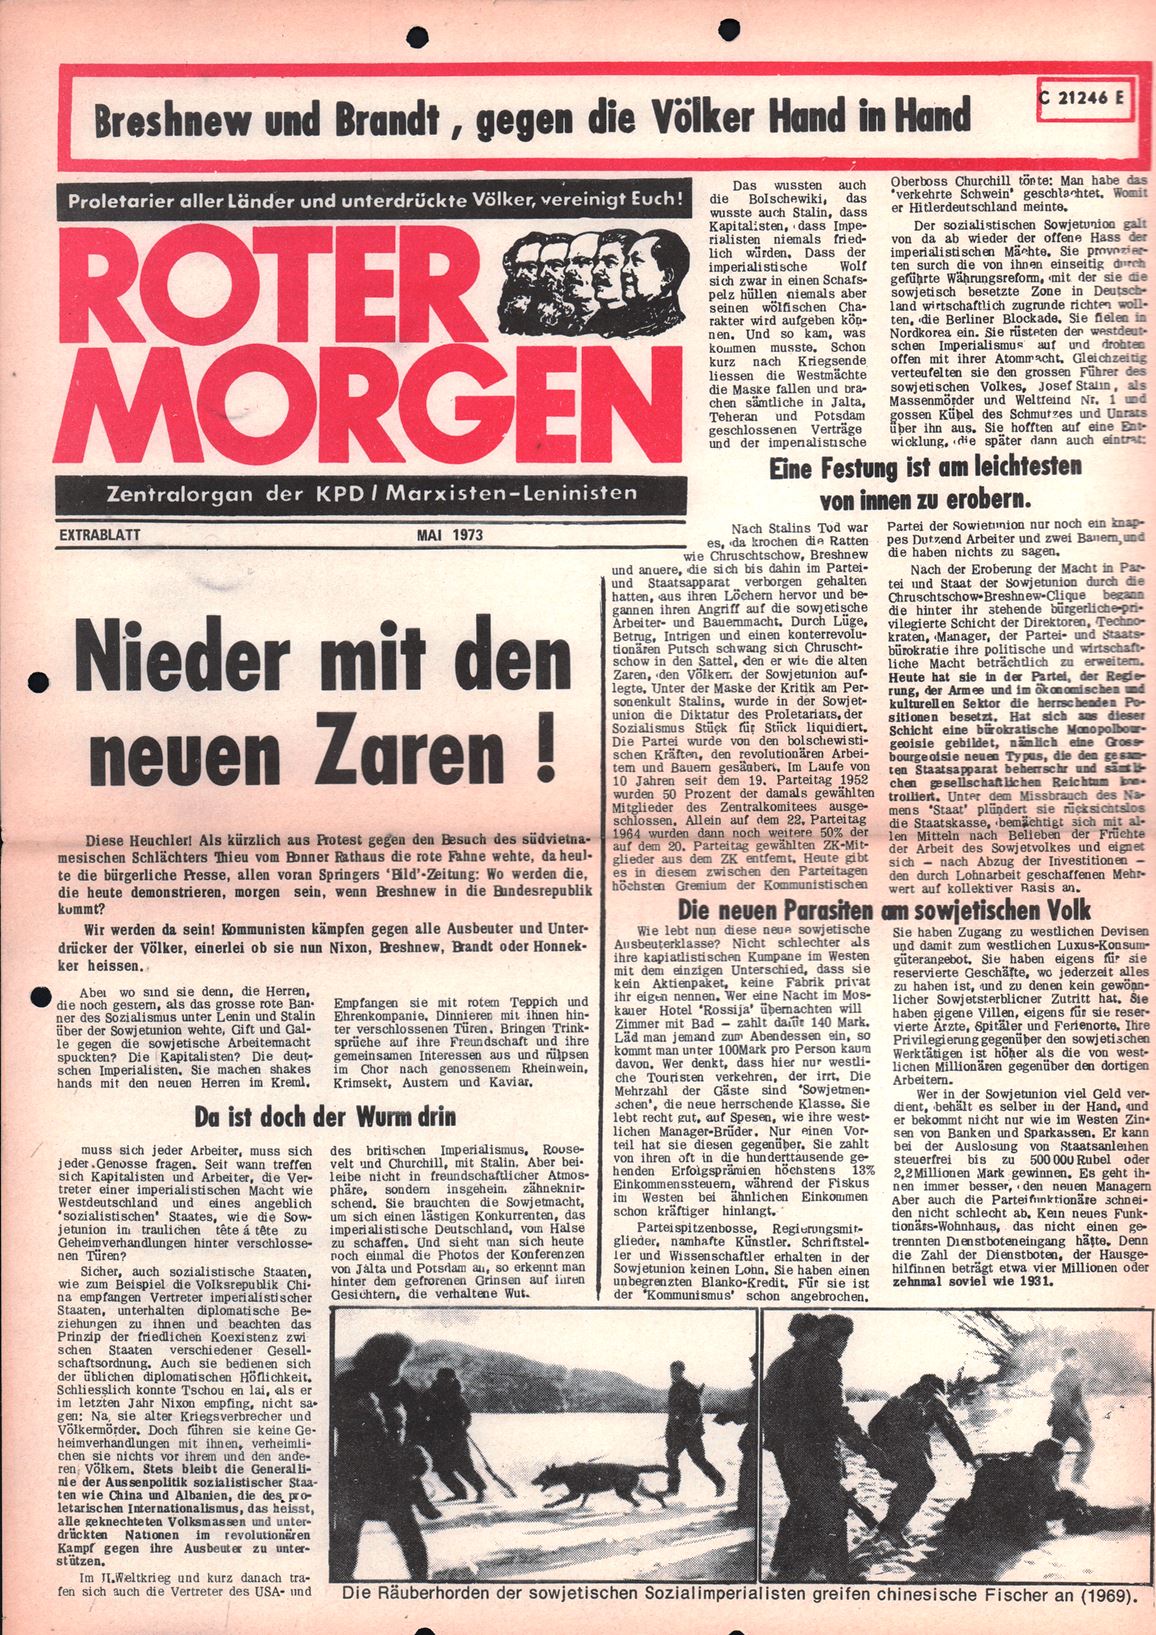 Roter Morgen, 19. Jg., Mai 1973, Extrablatt, Seite 1